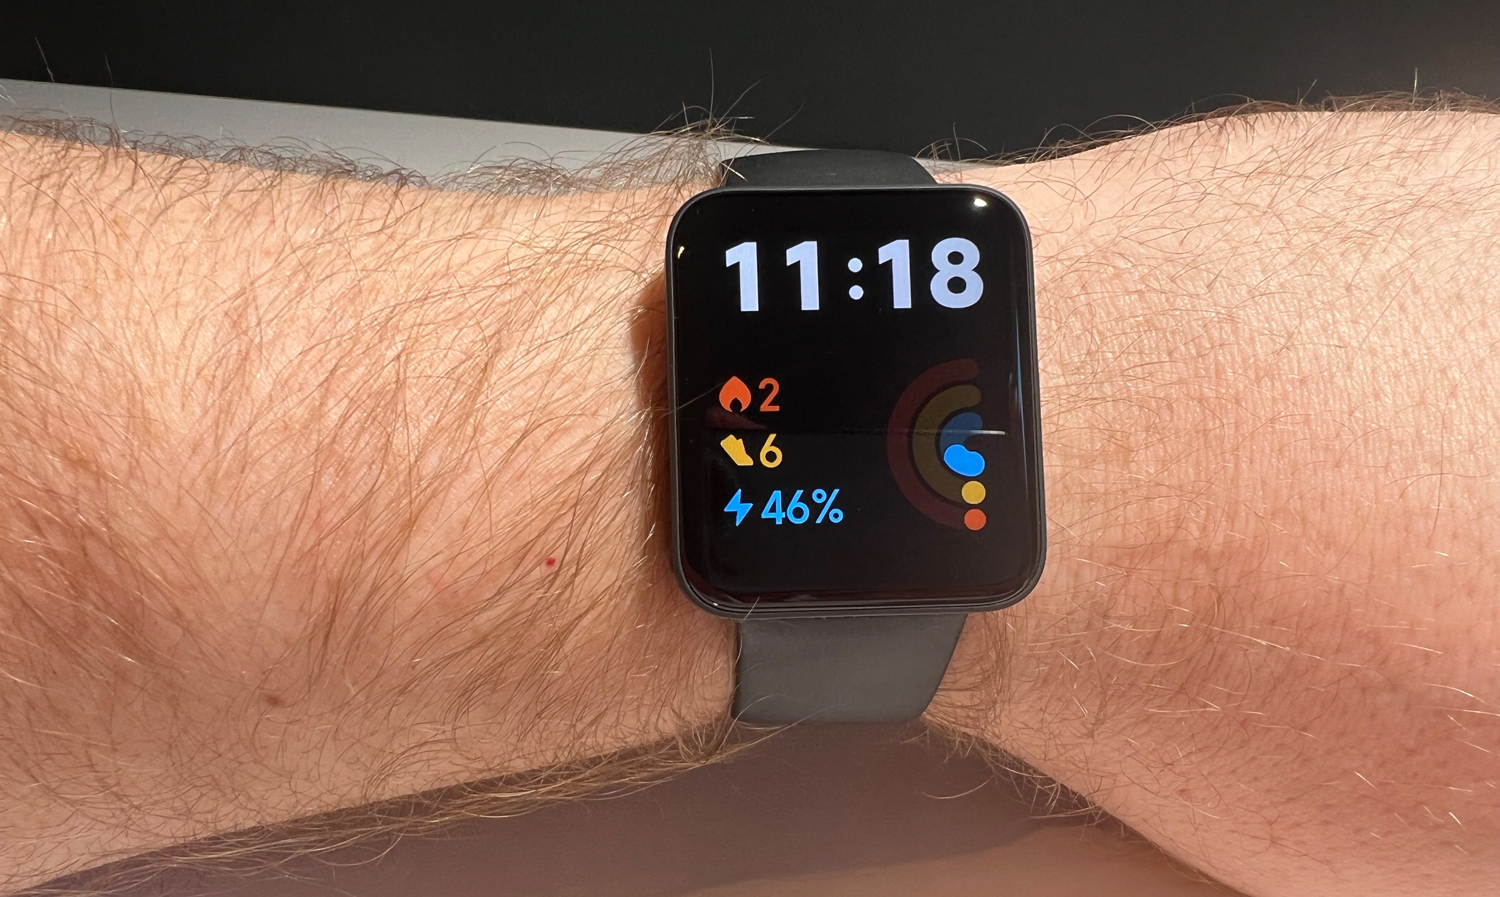 Montre connectée Xiaomi Mi Watch Lite (Noir) à prix bas